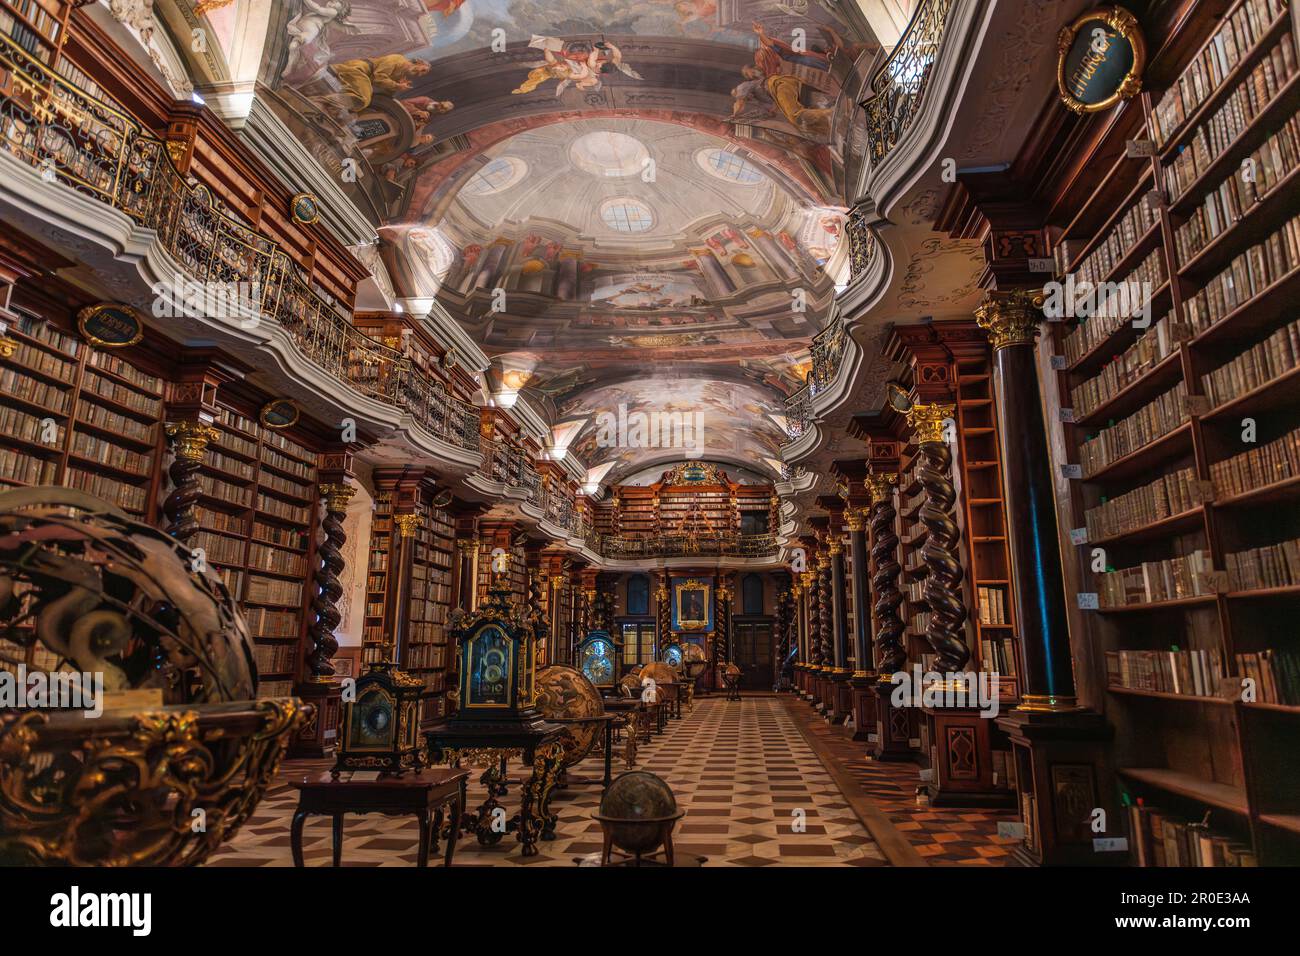 Vista panorámica de la biblioteca barroca del Clementinum en Praga (hacia 1556), llena de libros, frescos y globos geográficos y astronómicos. Foto de stock